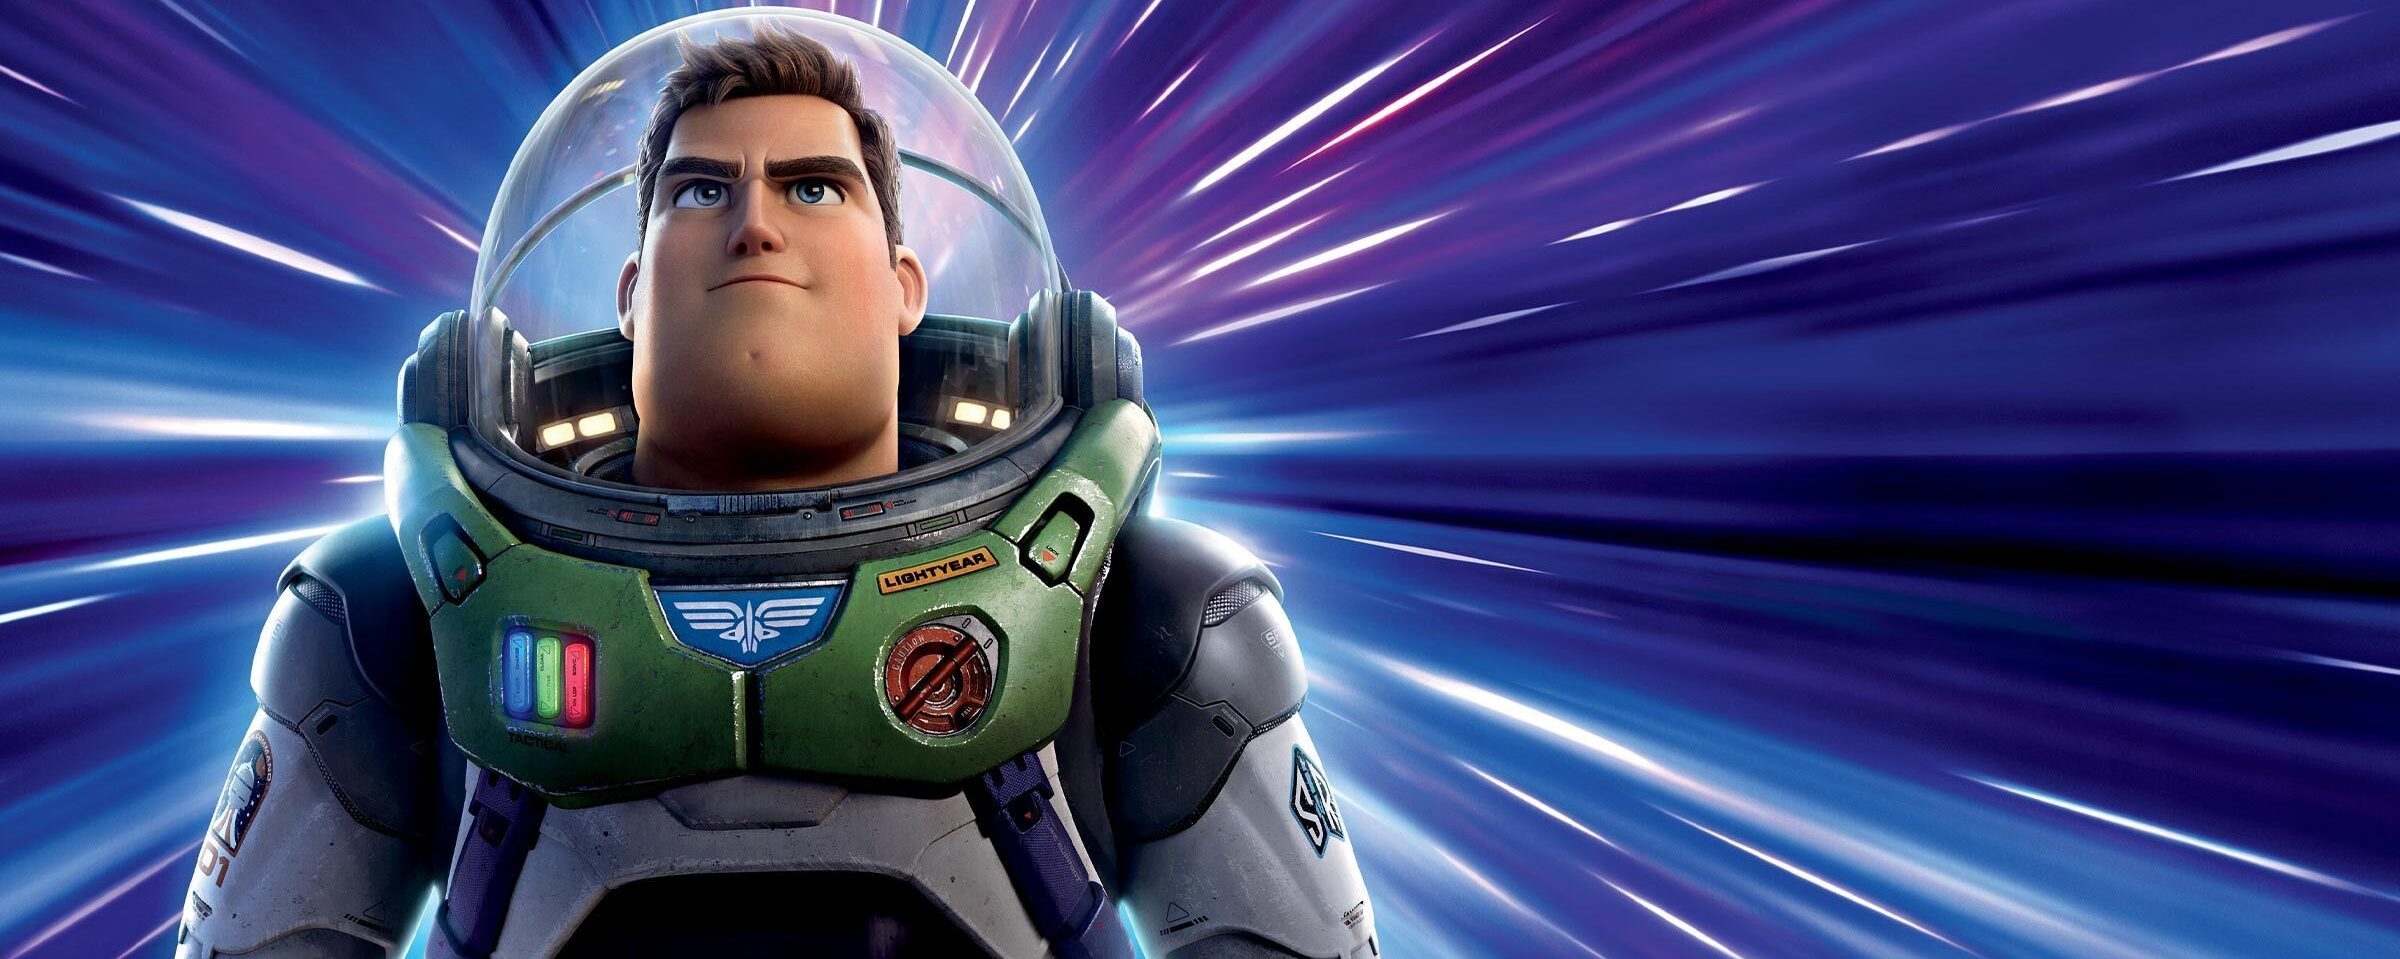 Que agradable total cerrar Lightyear: cómo fue la transformación de Buzz a "humano" | Disney Latino